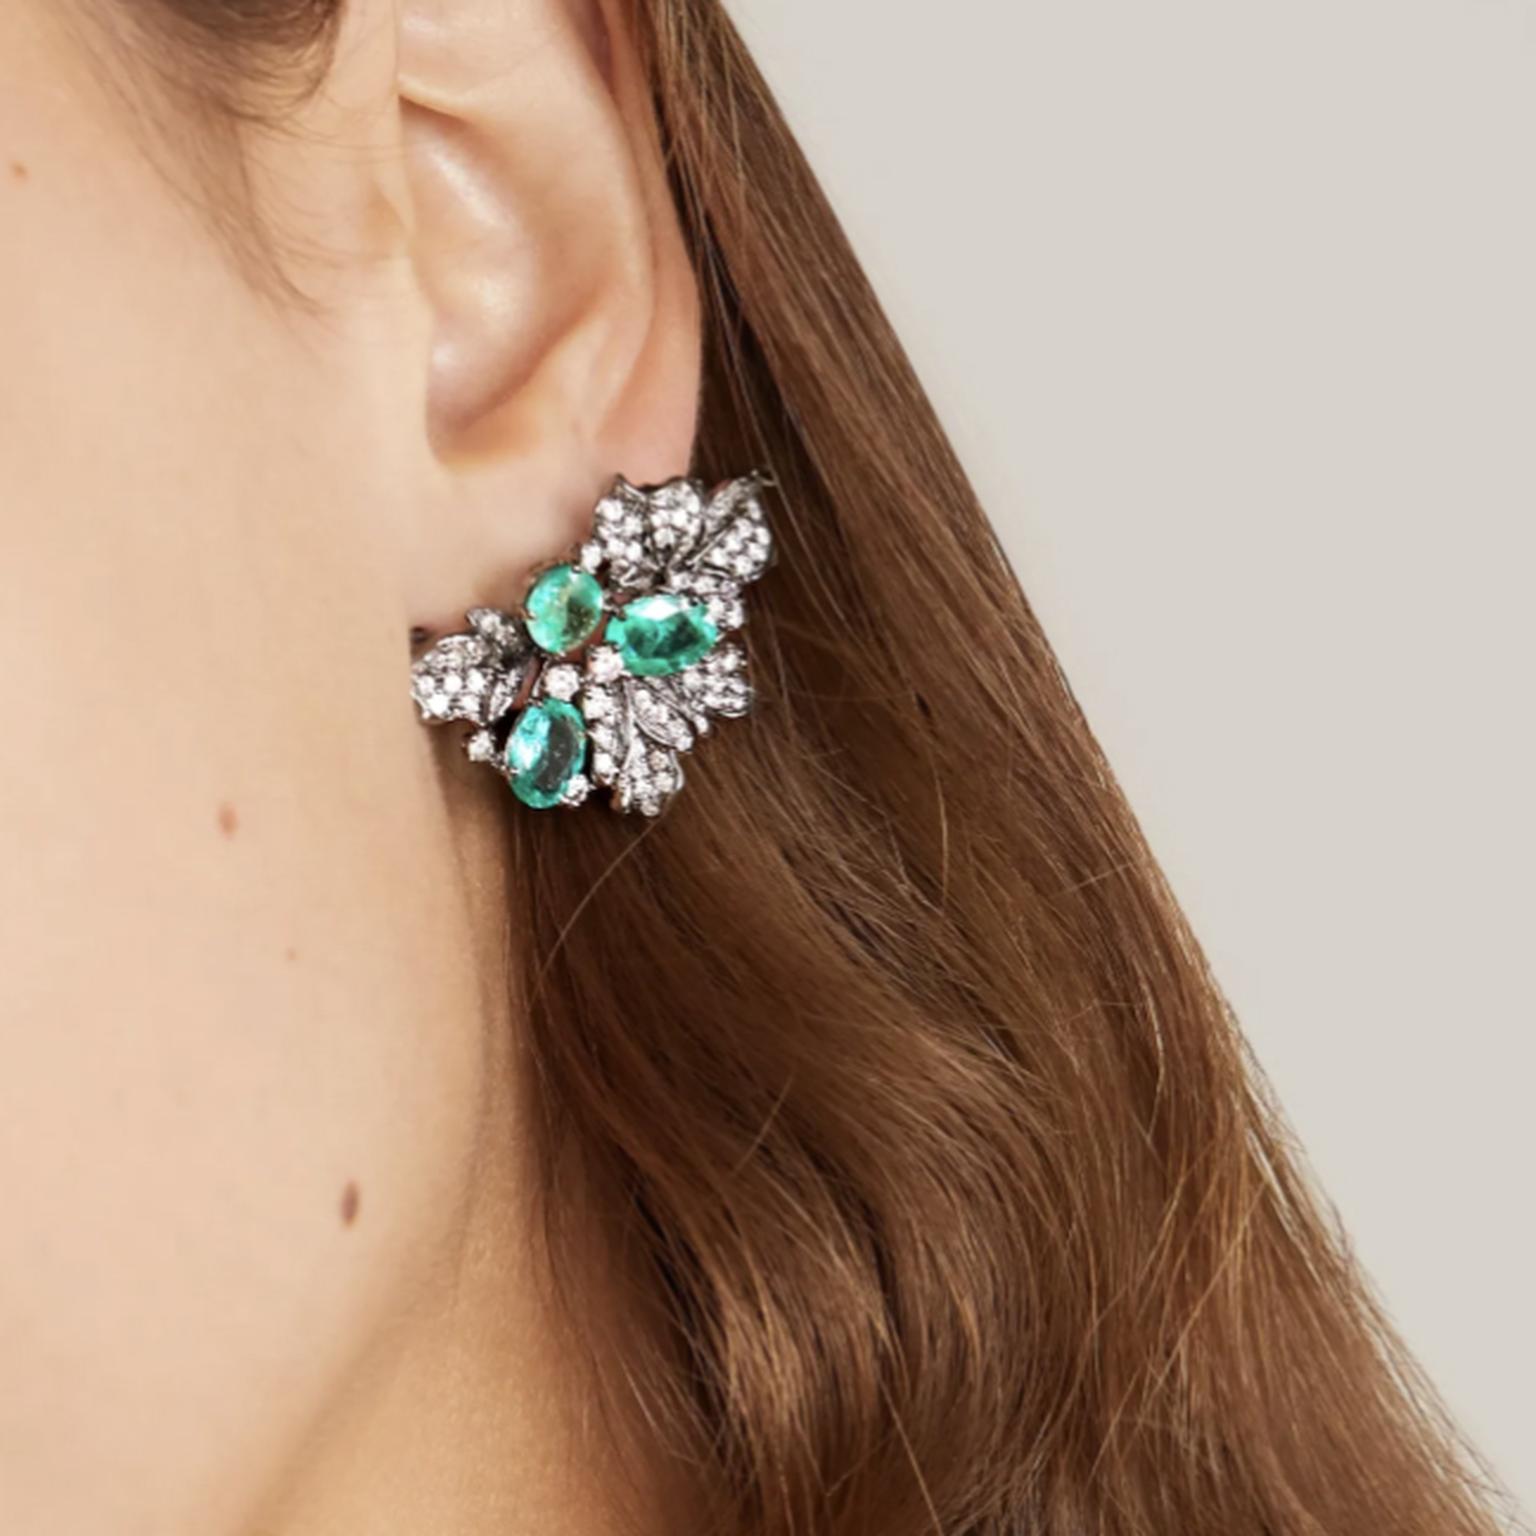 Earrings by Lorraine Schwartz on model